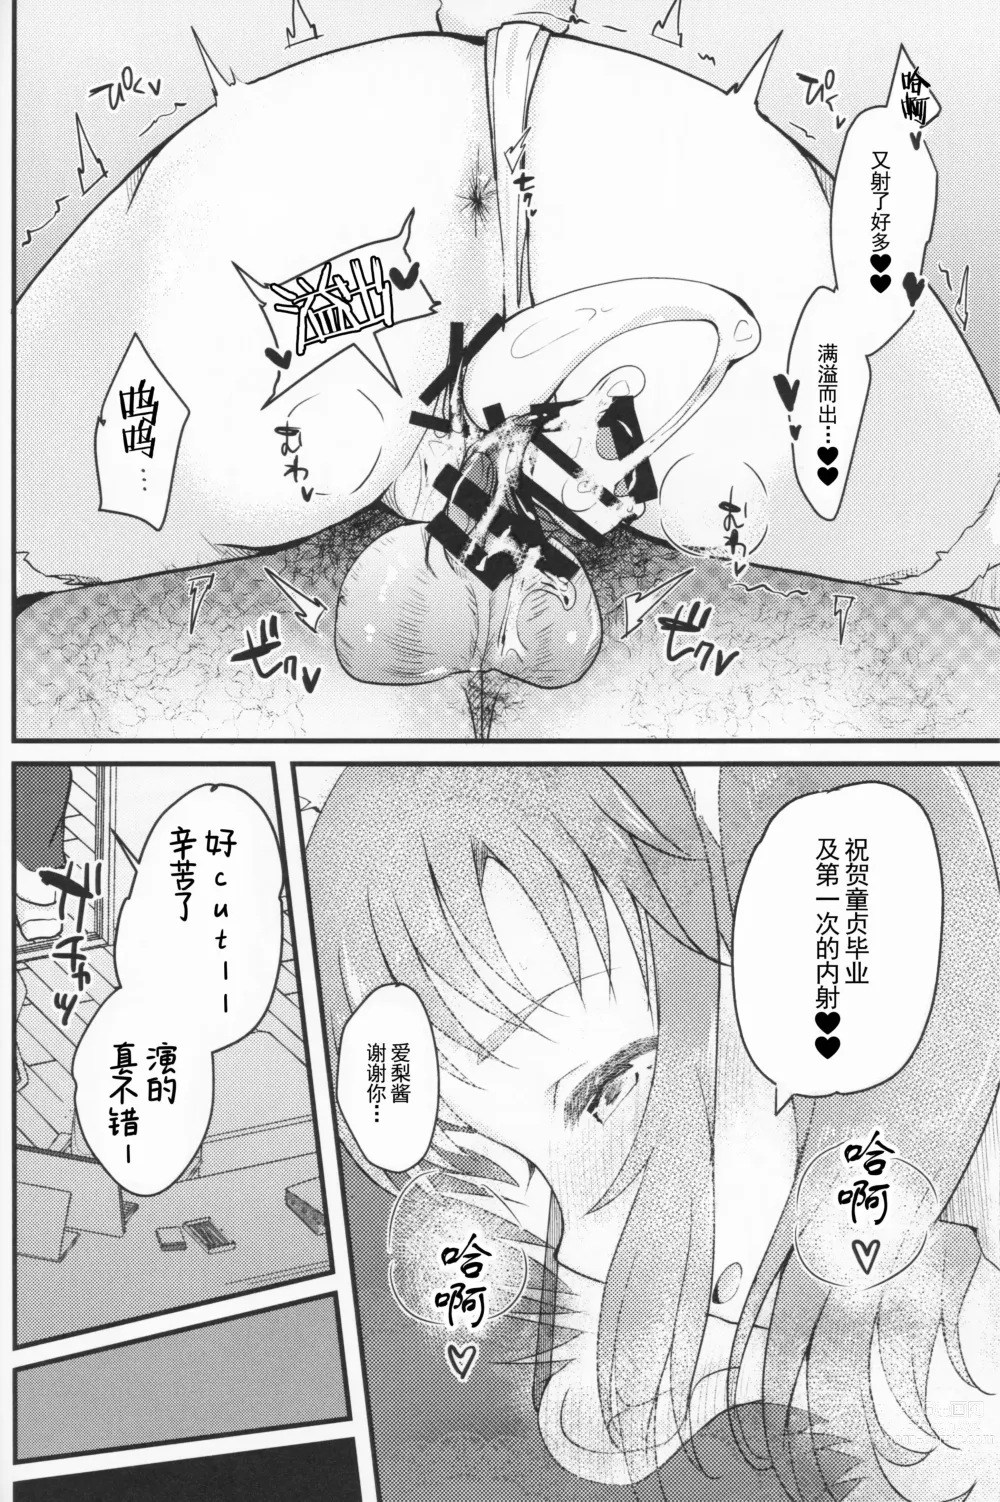 Page 24 of doujinshi Shinjin AV Joyuu Totoki Airi Fan no Otaku Houmon de Paizuri & Fudeoroshi